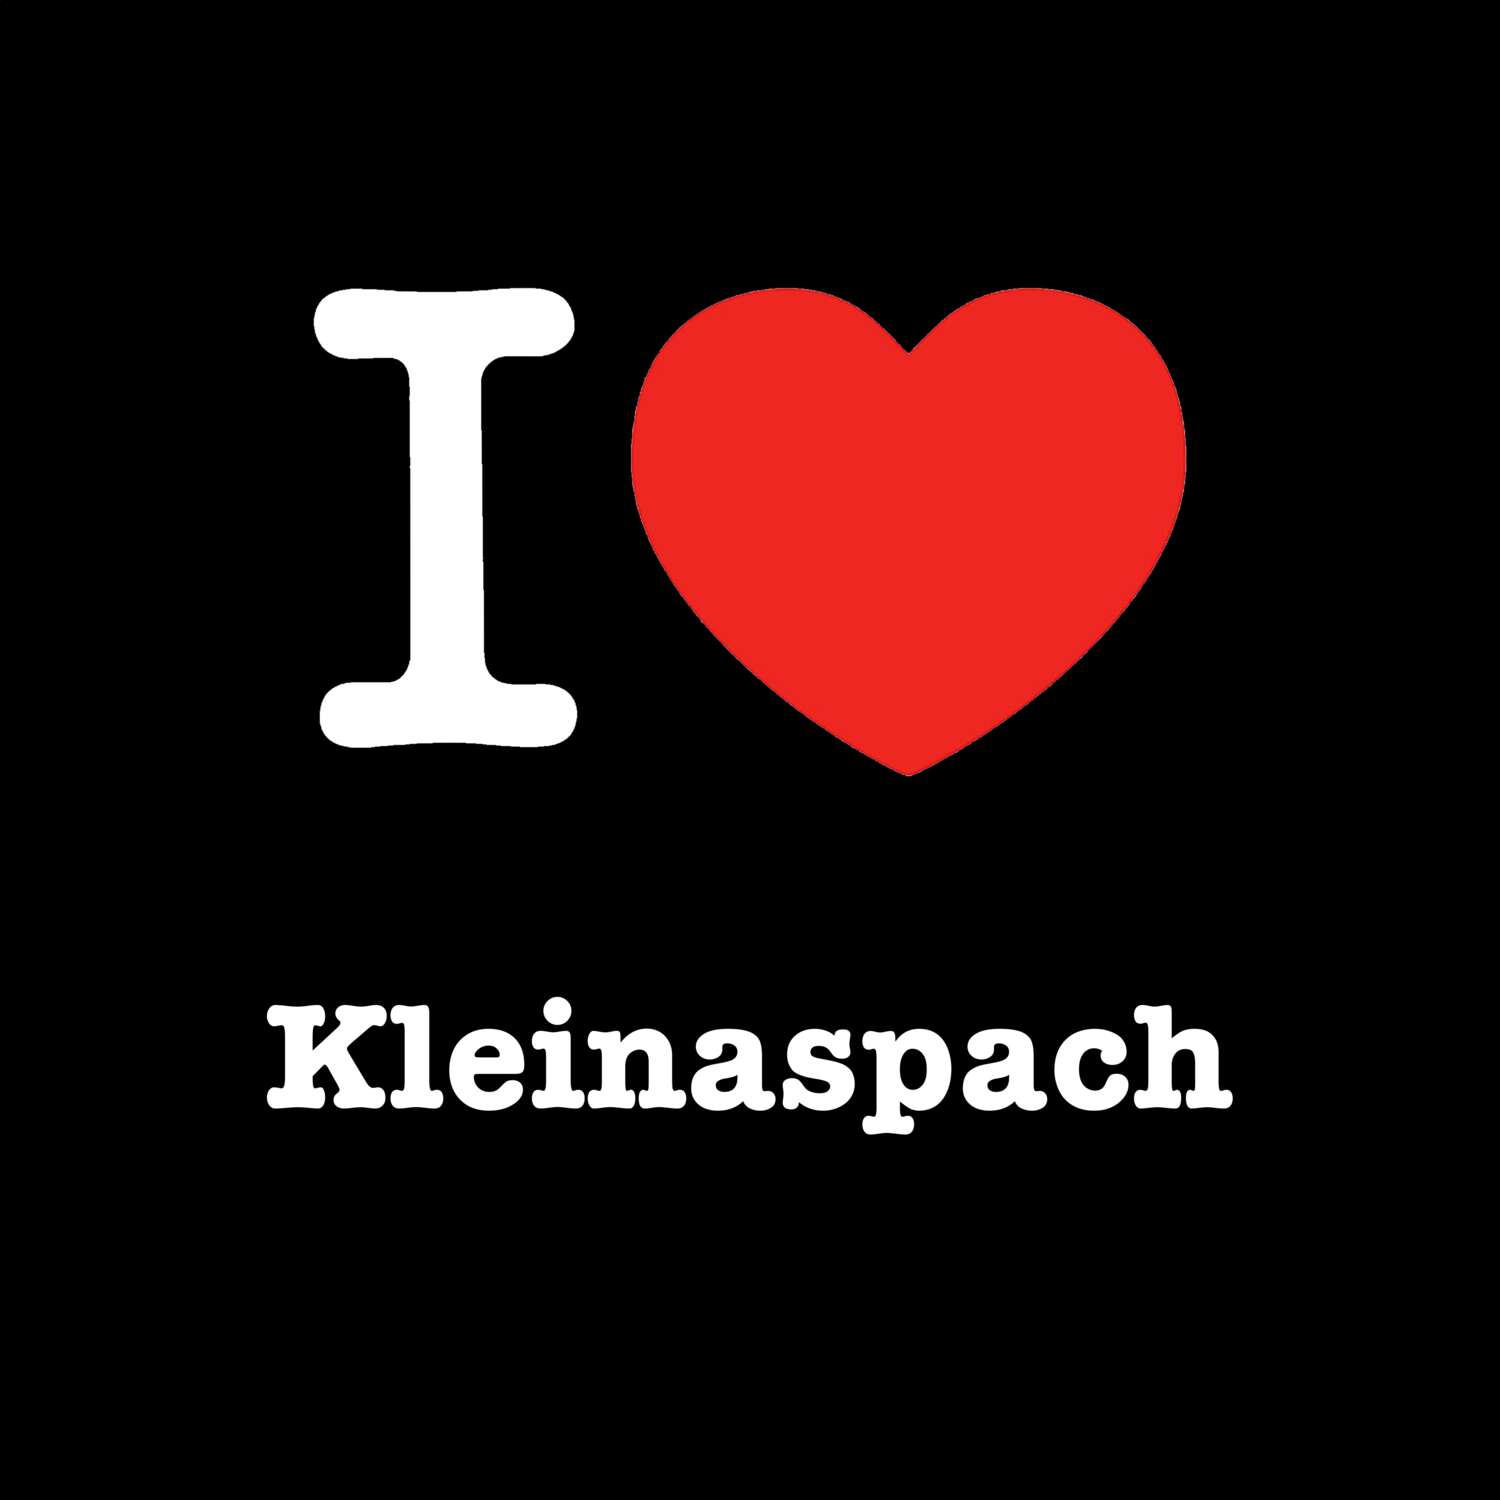 Kleinaspach T-Shirt »I love«